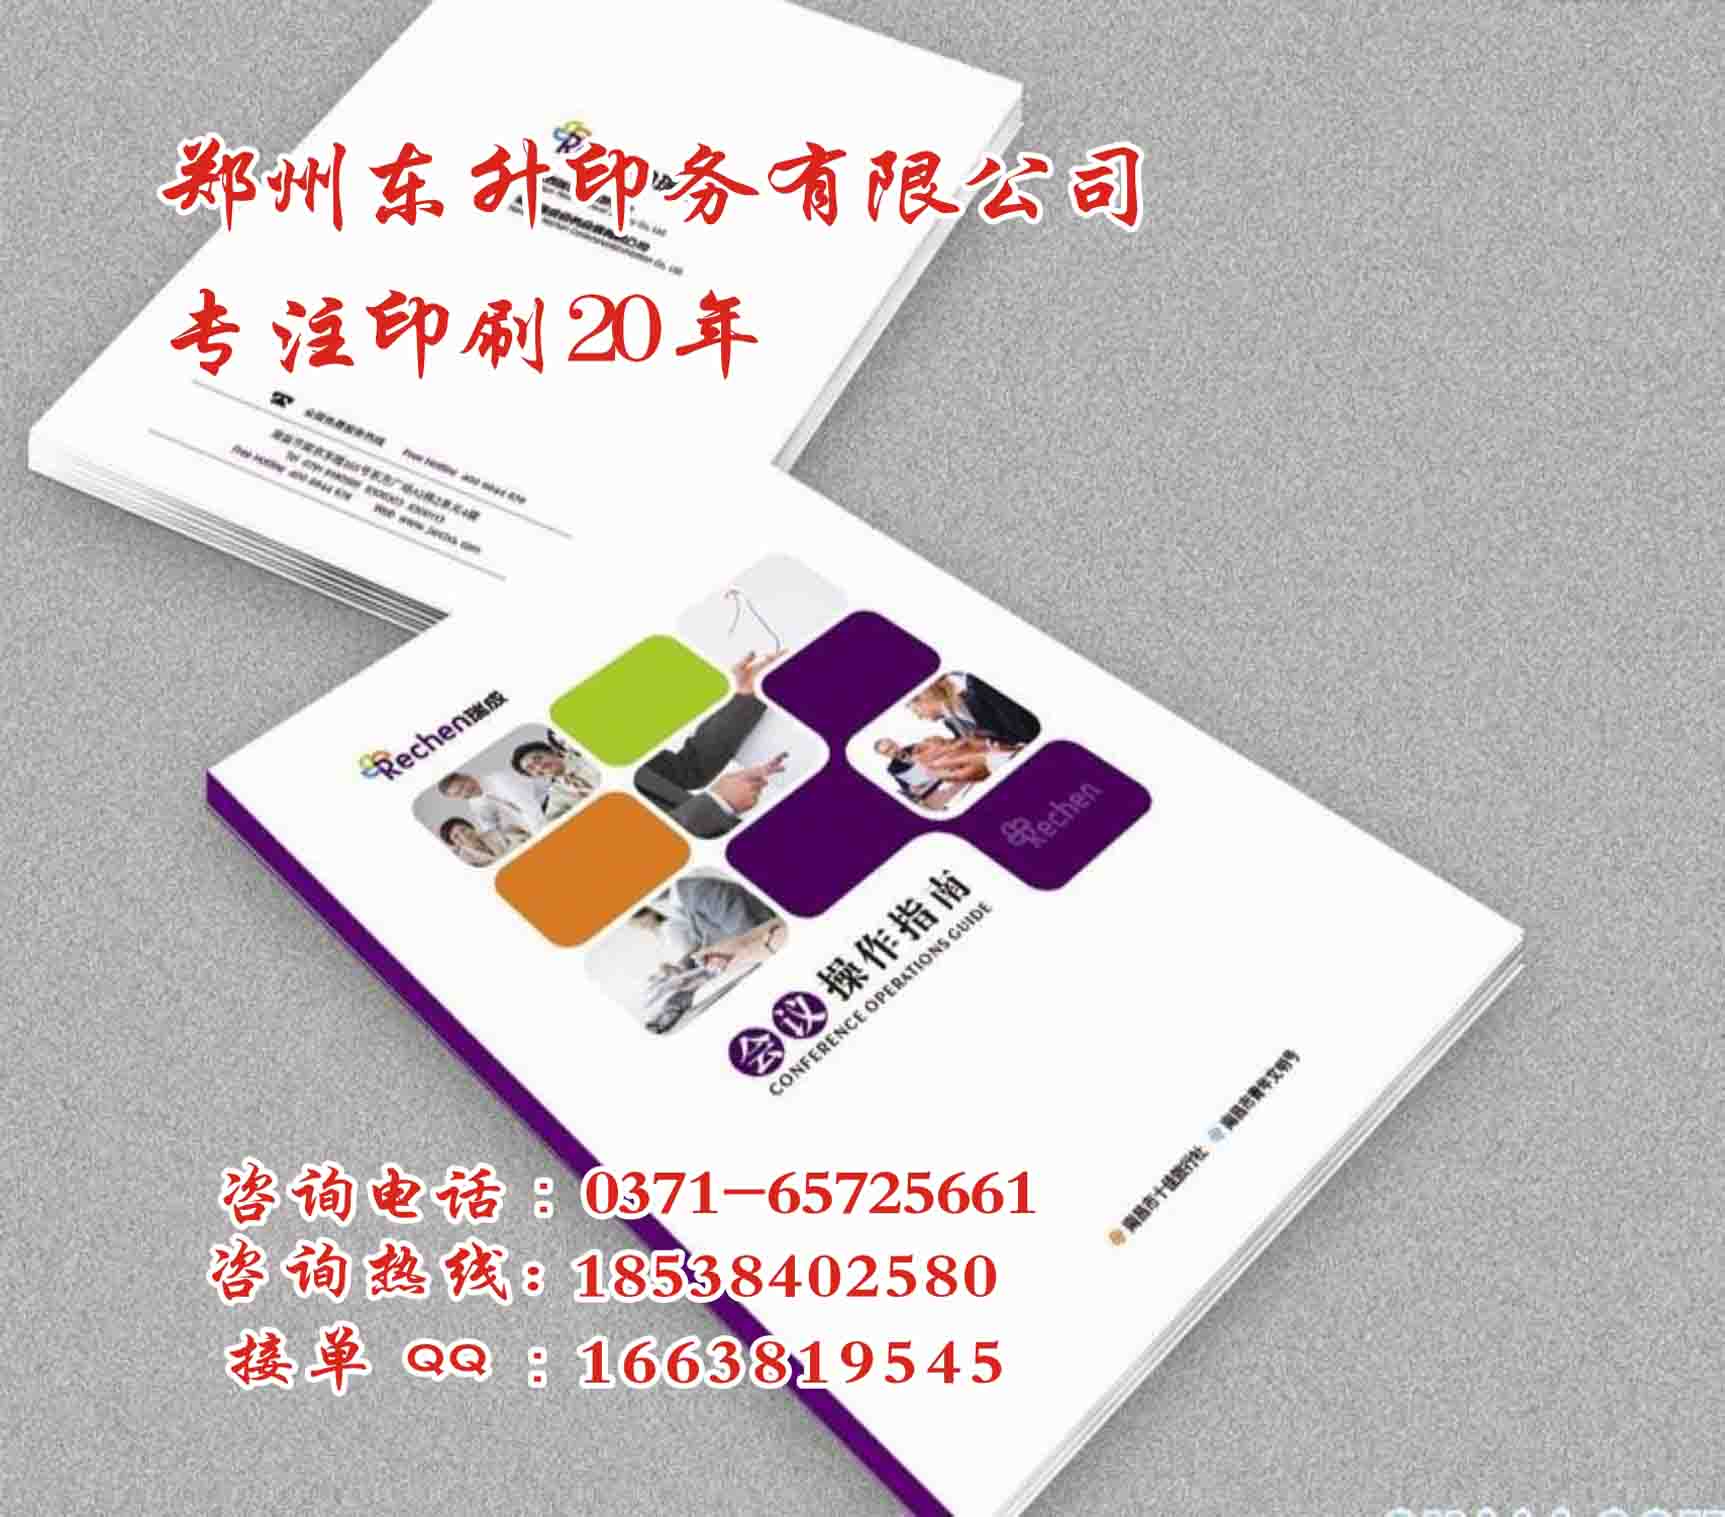 供应用于纸质品印刷|会议资料印刷的郑州黑白印刷厂家 郑州专业黑白书刊印刷供应厂家图片